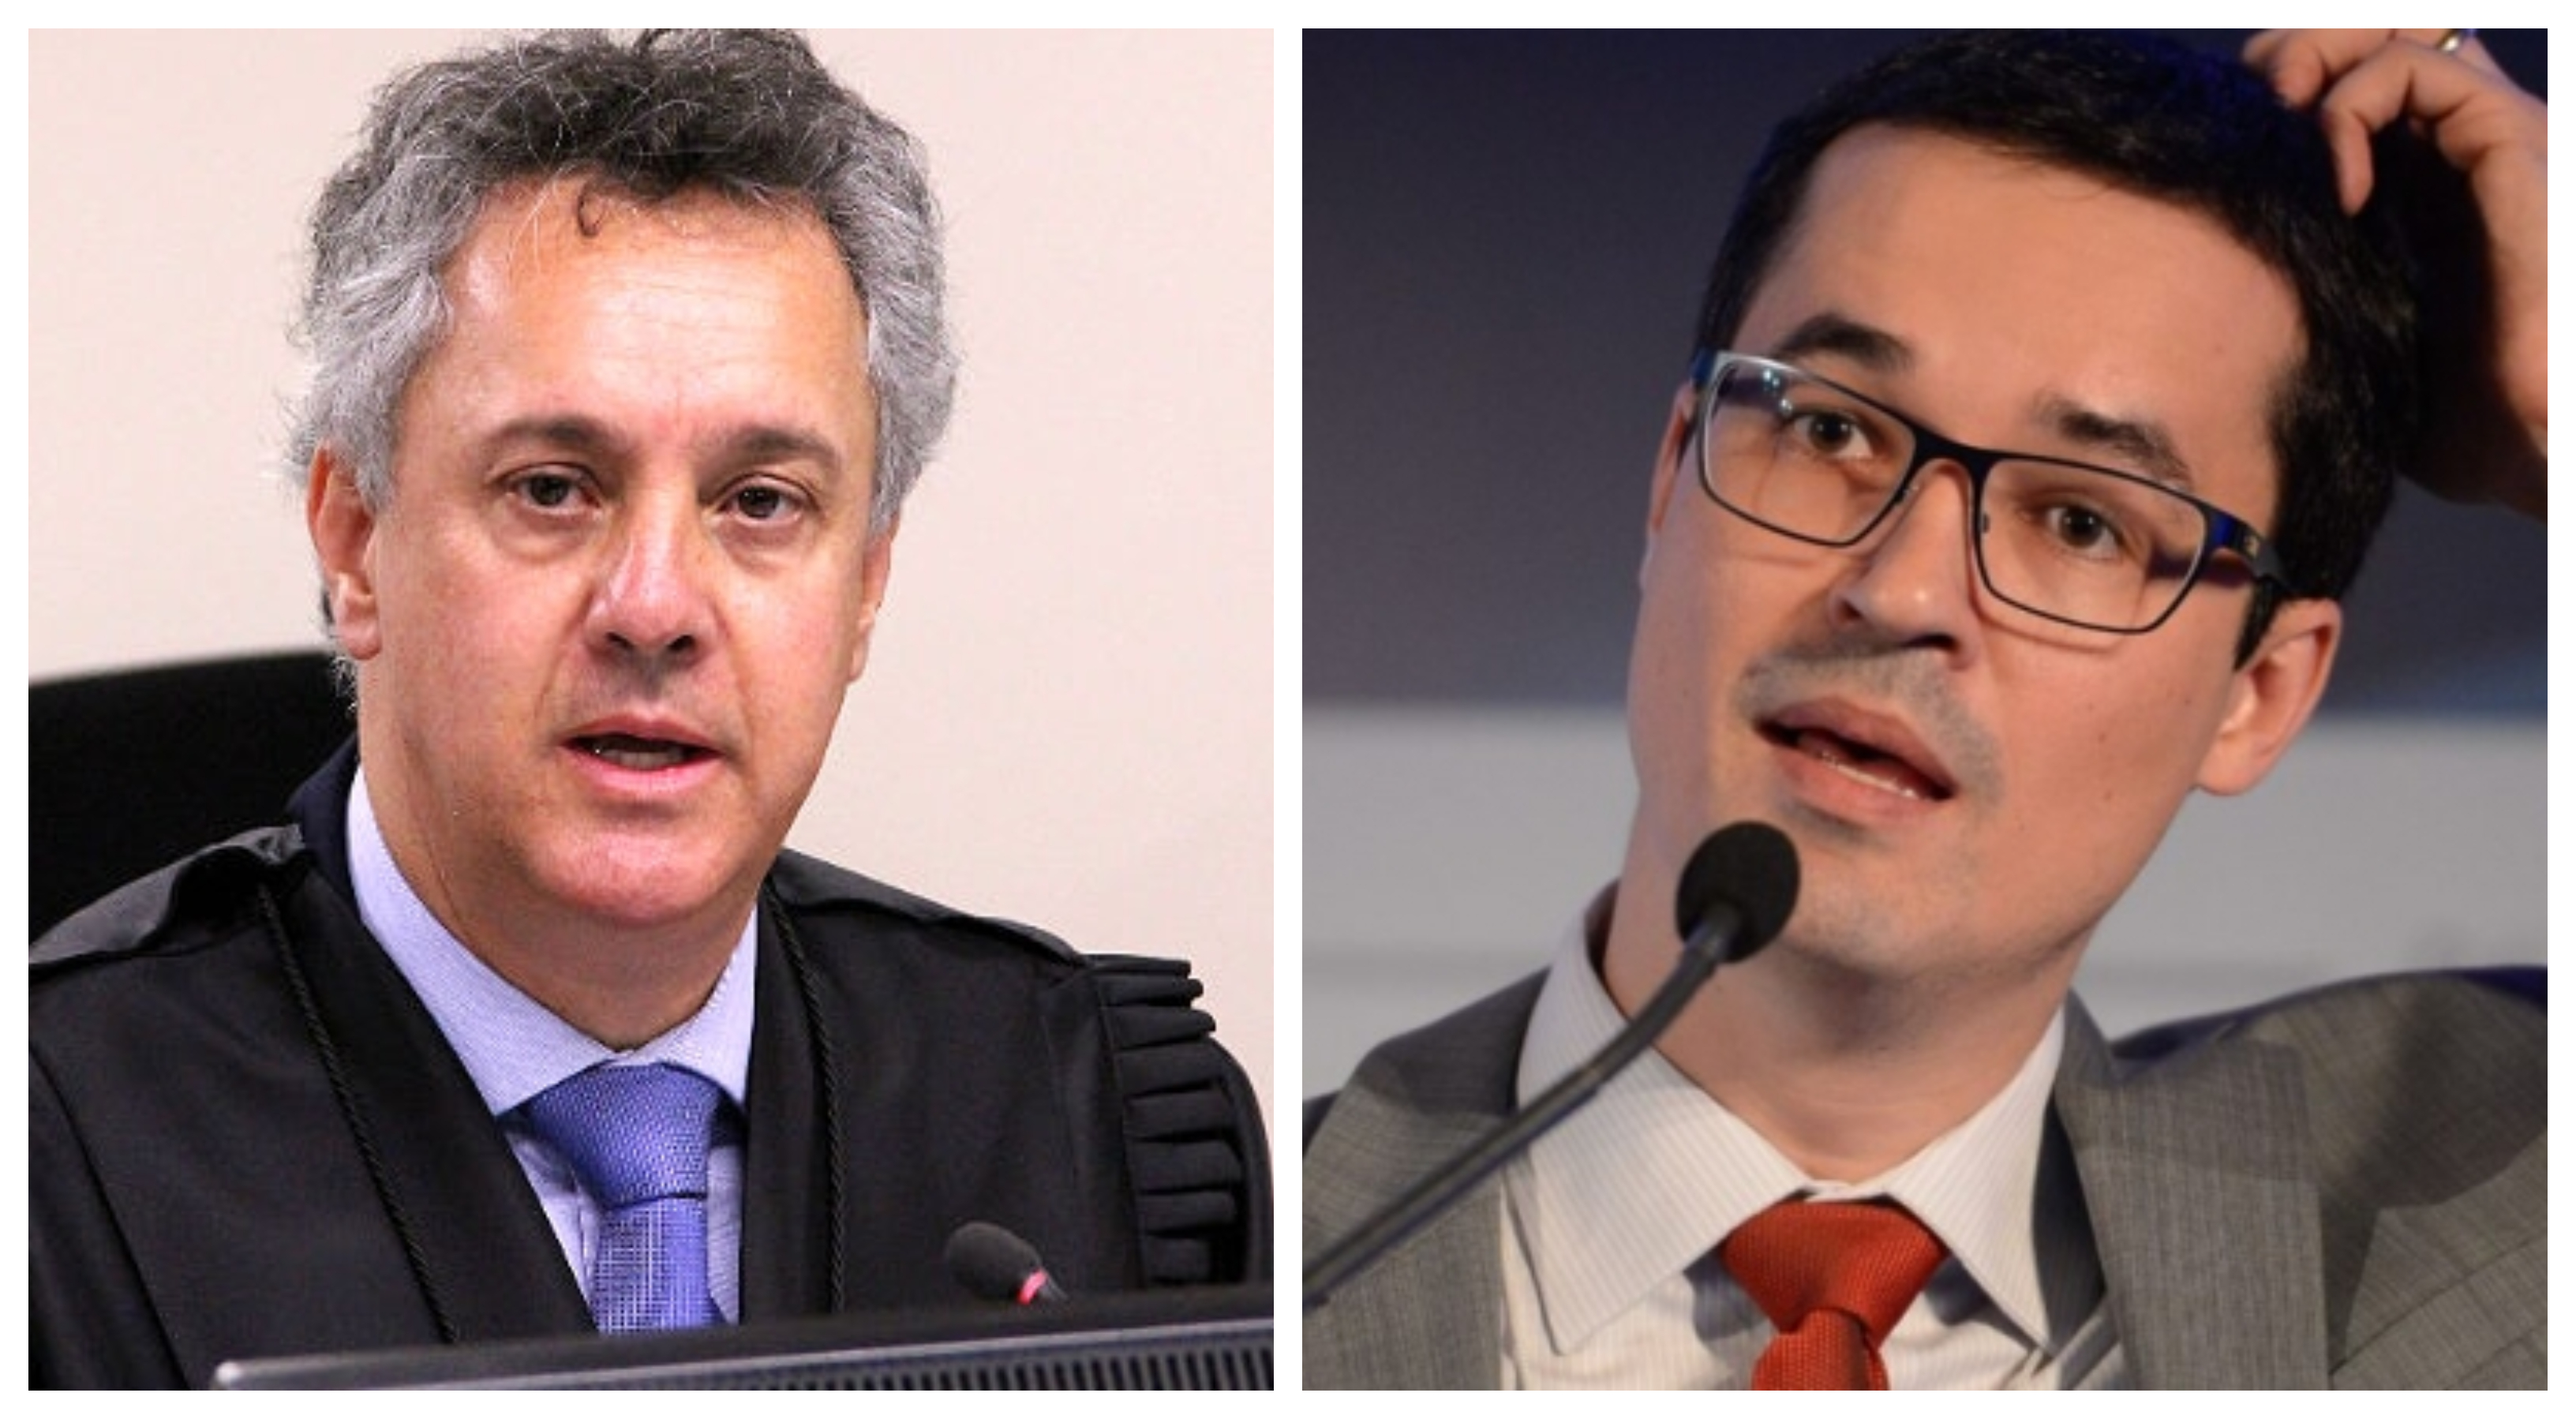 Dallagnol manteve diálogos ‘impróprios’ com relator da Lava Jato no TRF-4